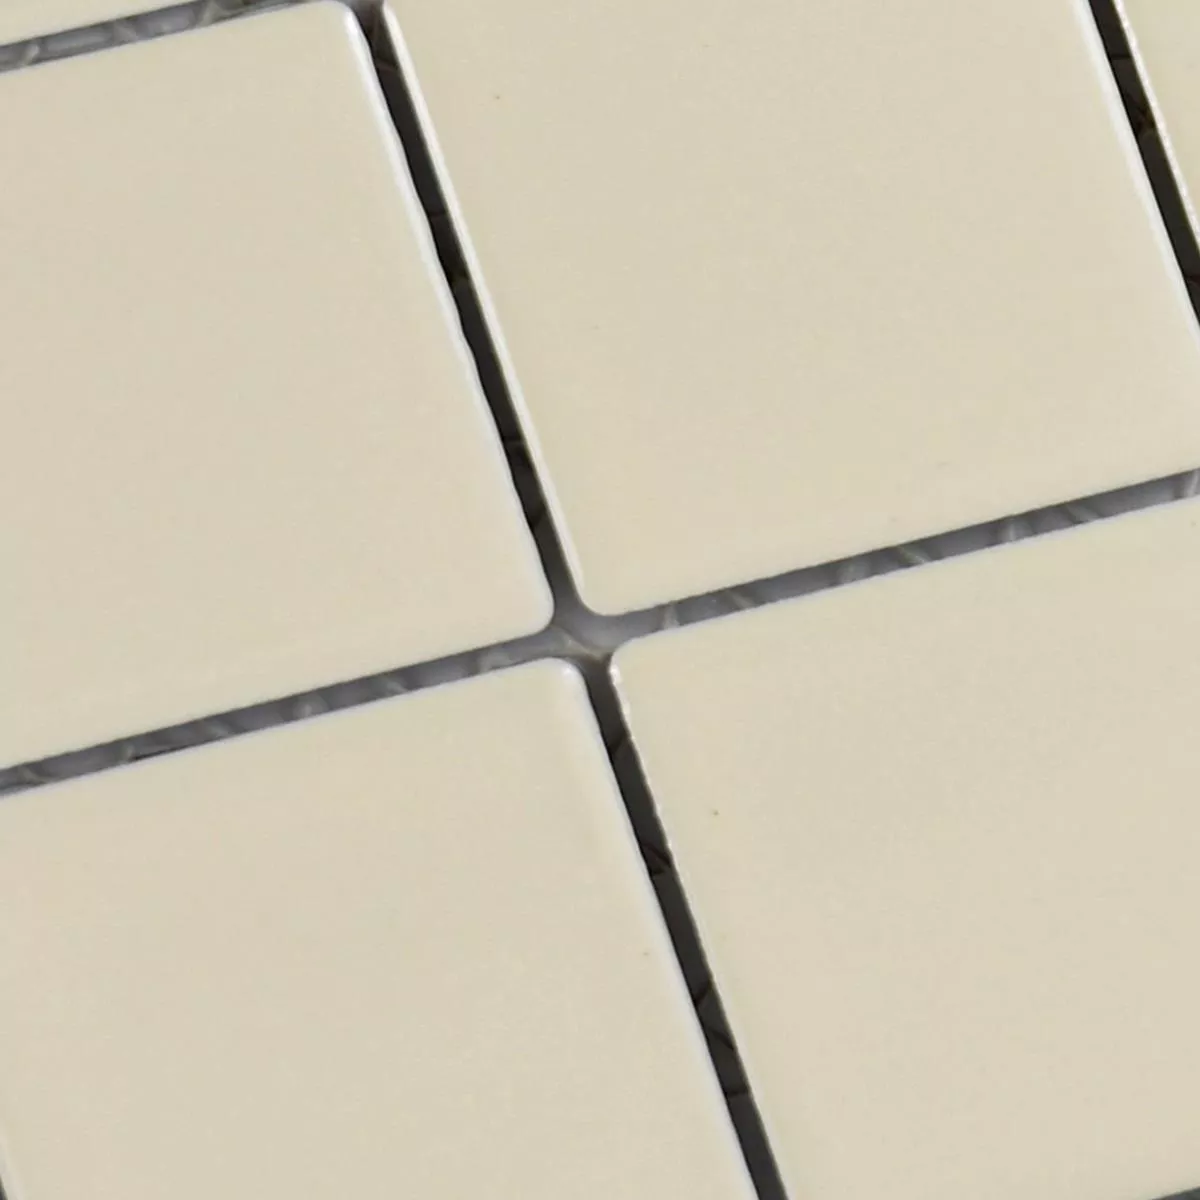 Sample Ceramic Mosaic Tiles Adrian Beige Mat Square 48
